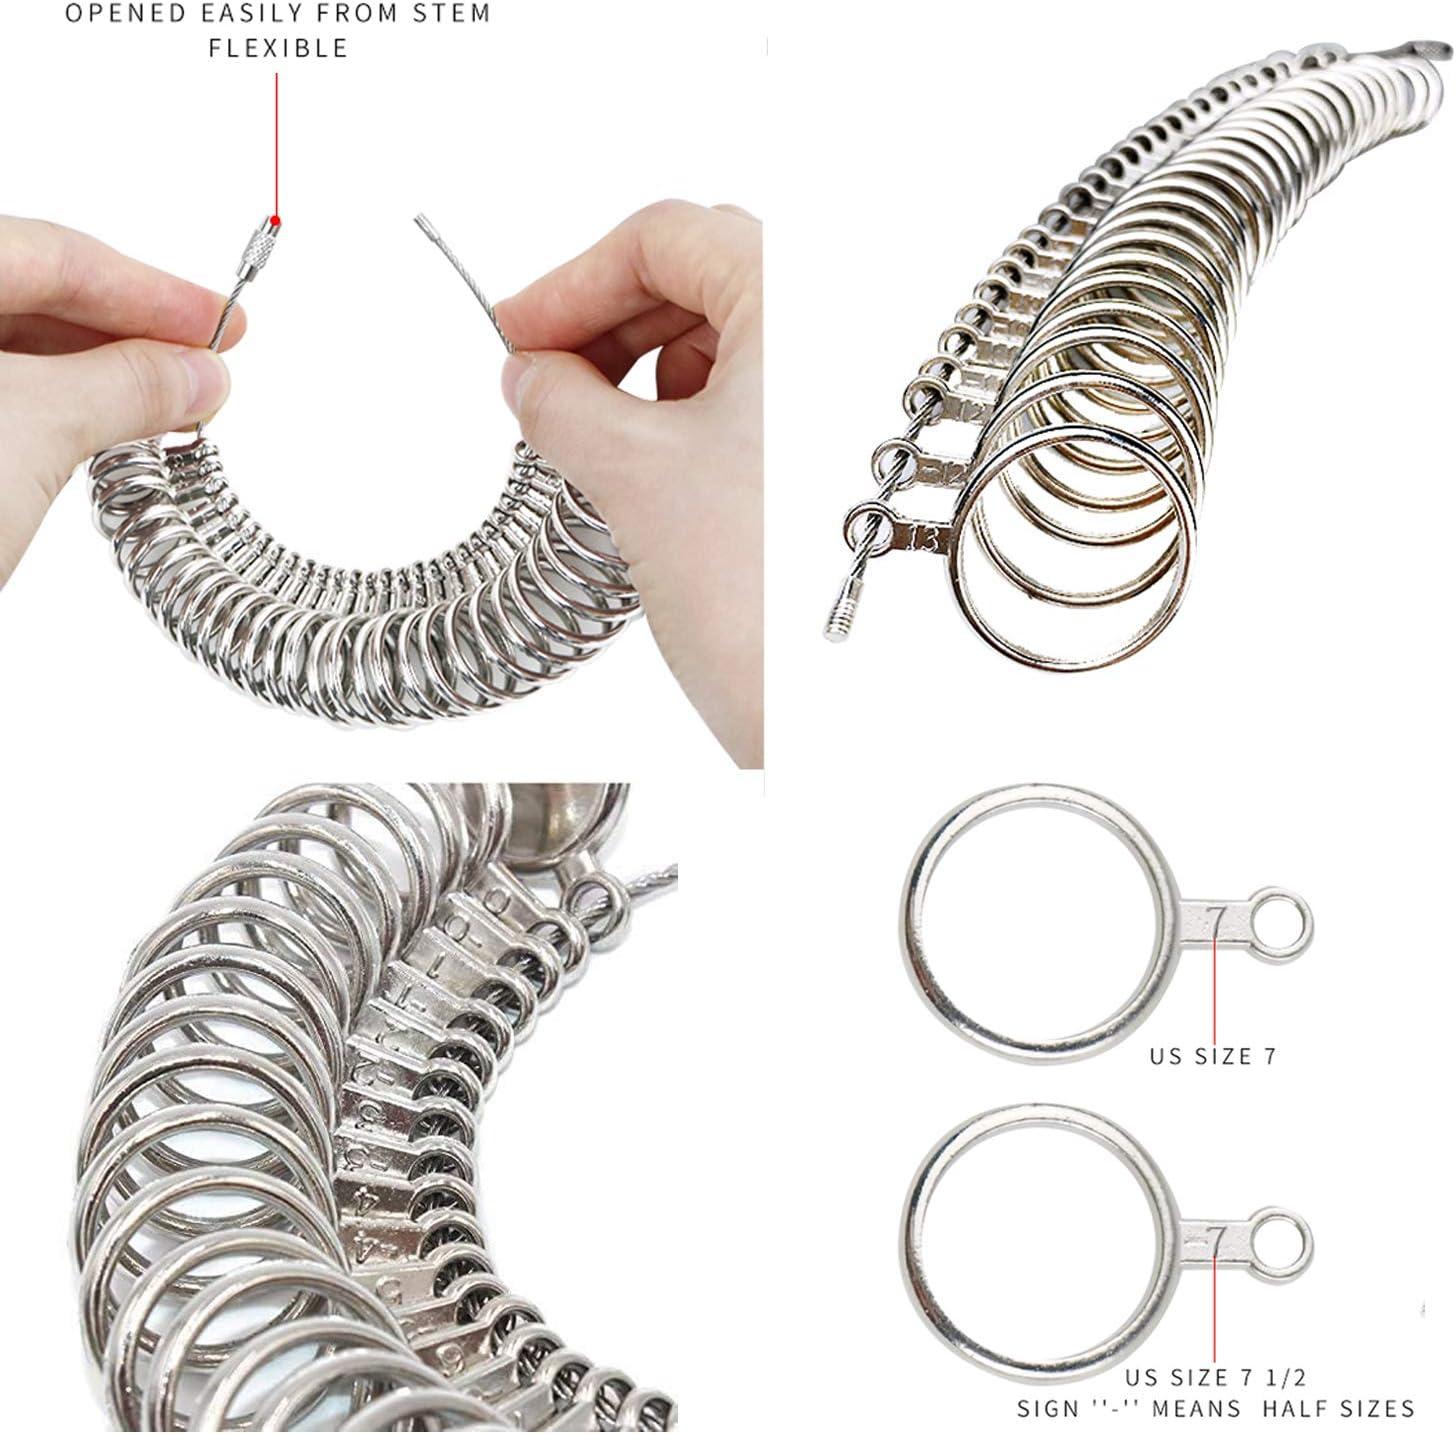 NIUPIKA Ring Sizer Measuring Tool Ring Sizing Mandrel Set Metal Measure  Finger Gauge US Size 1-13 Jewelry Rings Size Tools Kit 